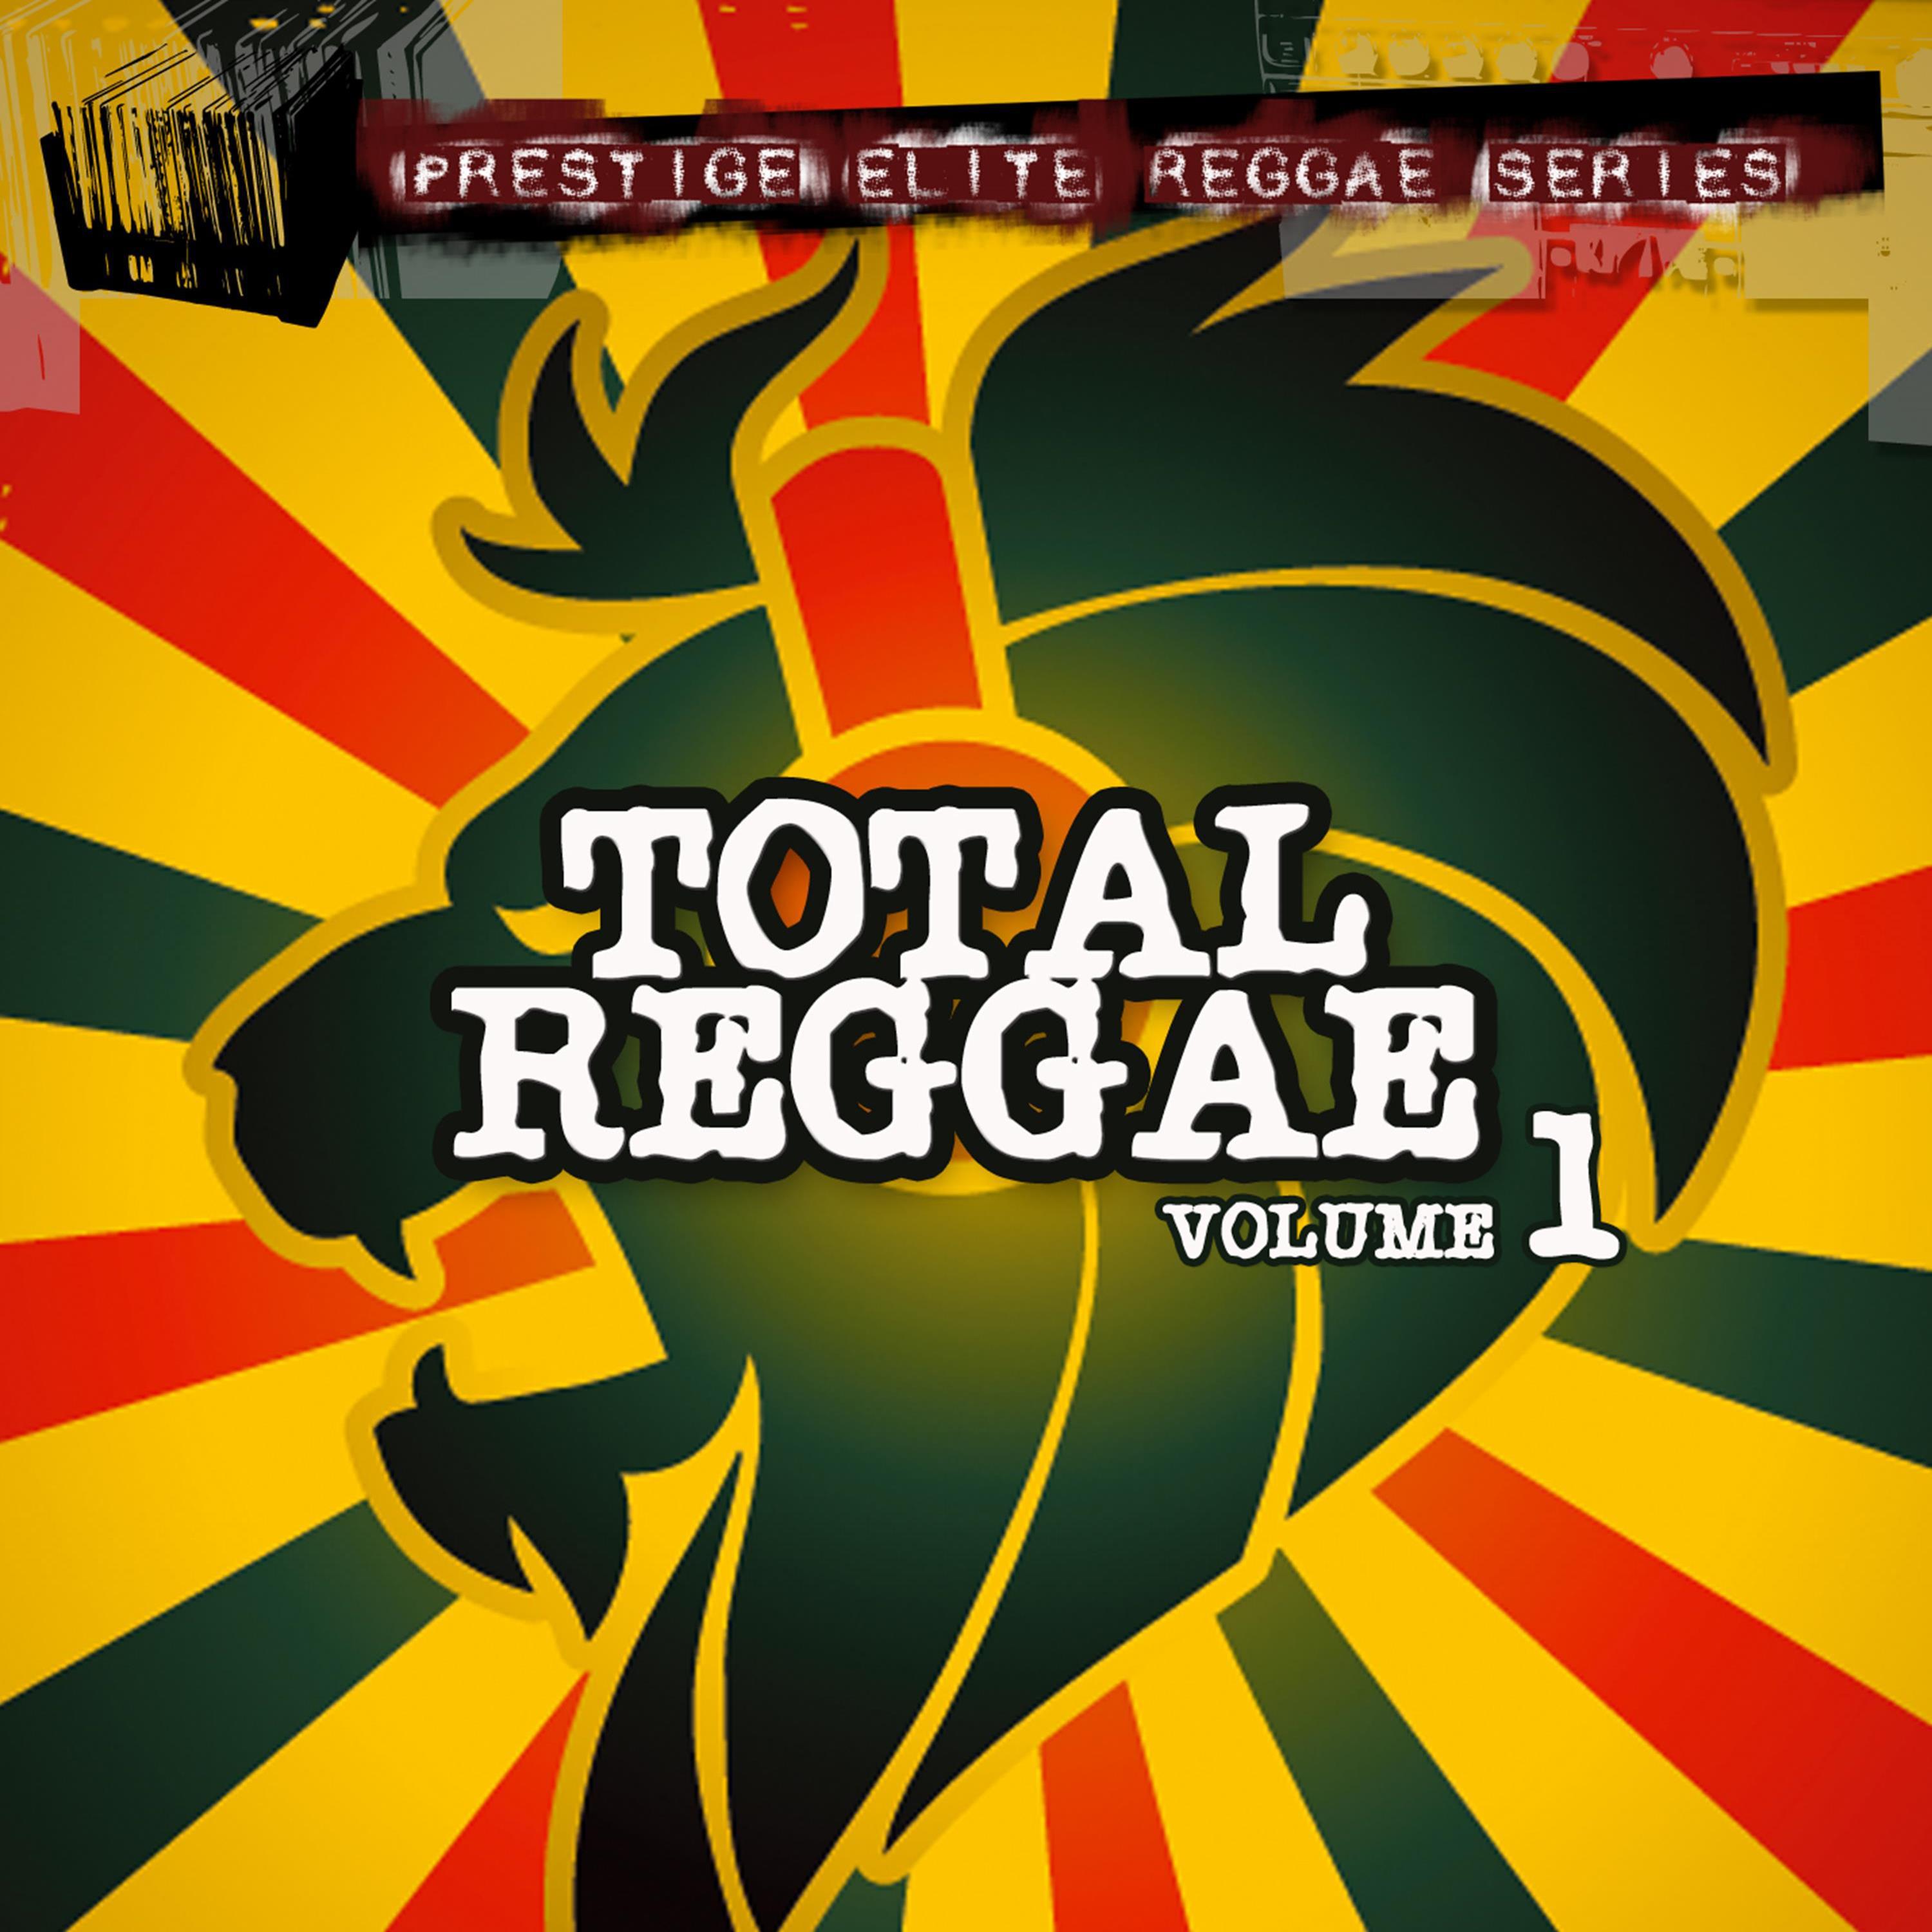 Total Reggae, Vol. 1